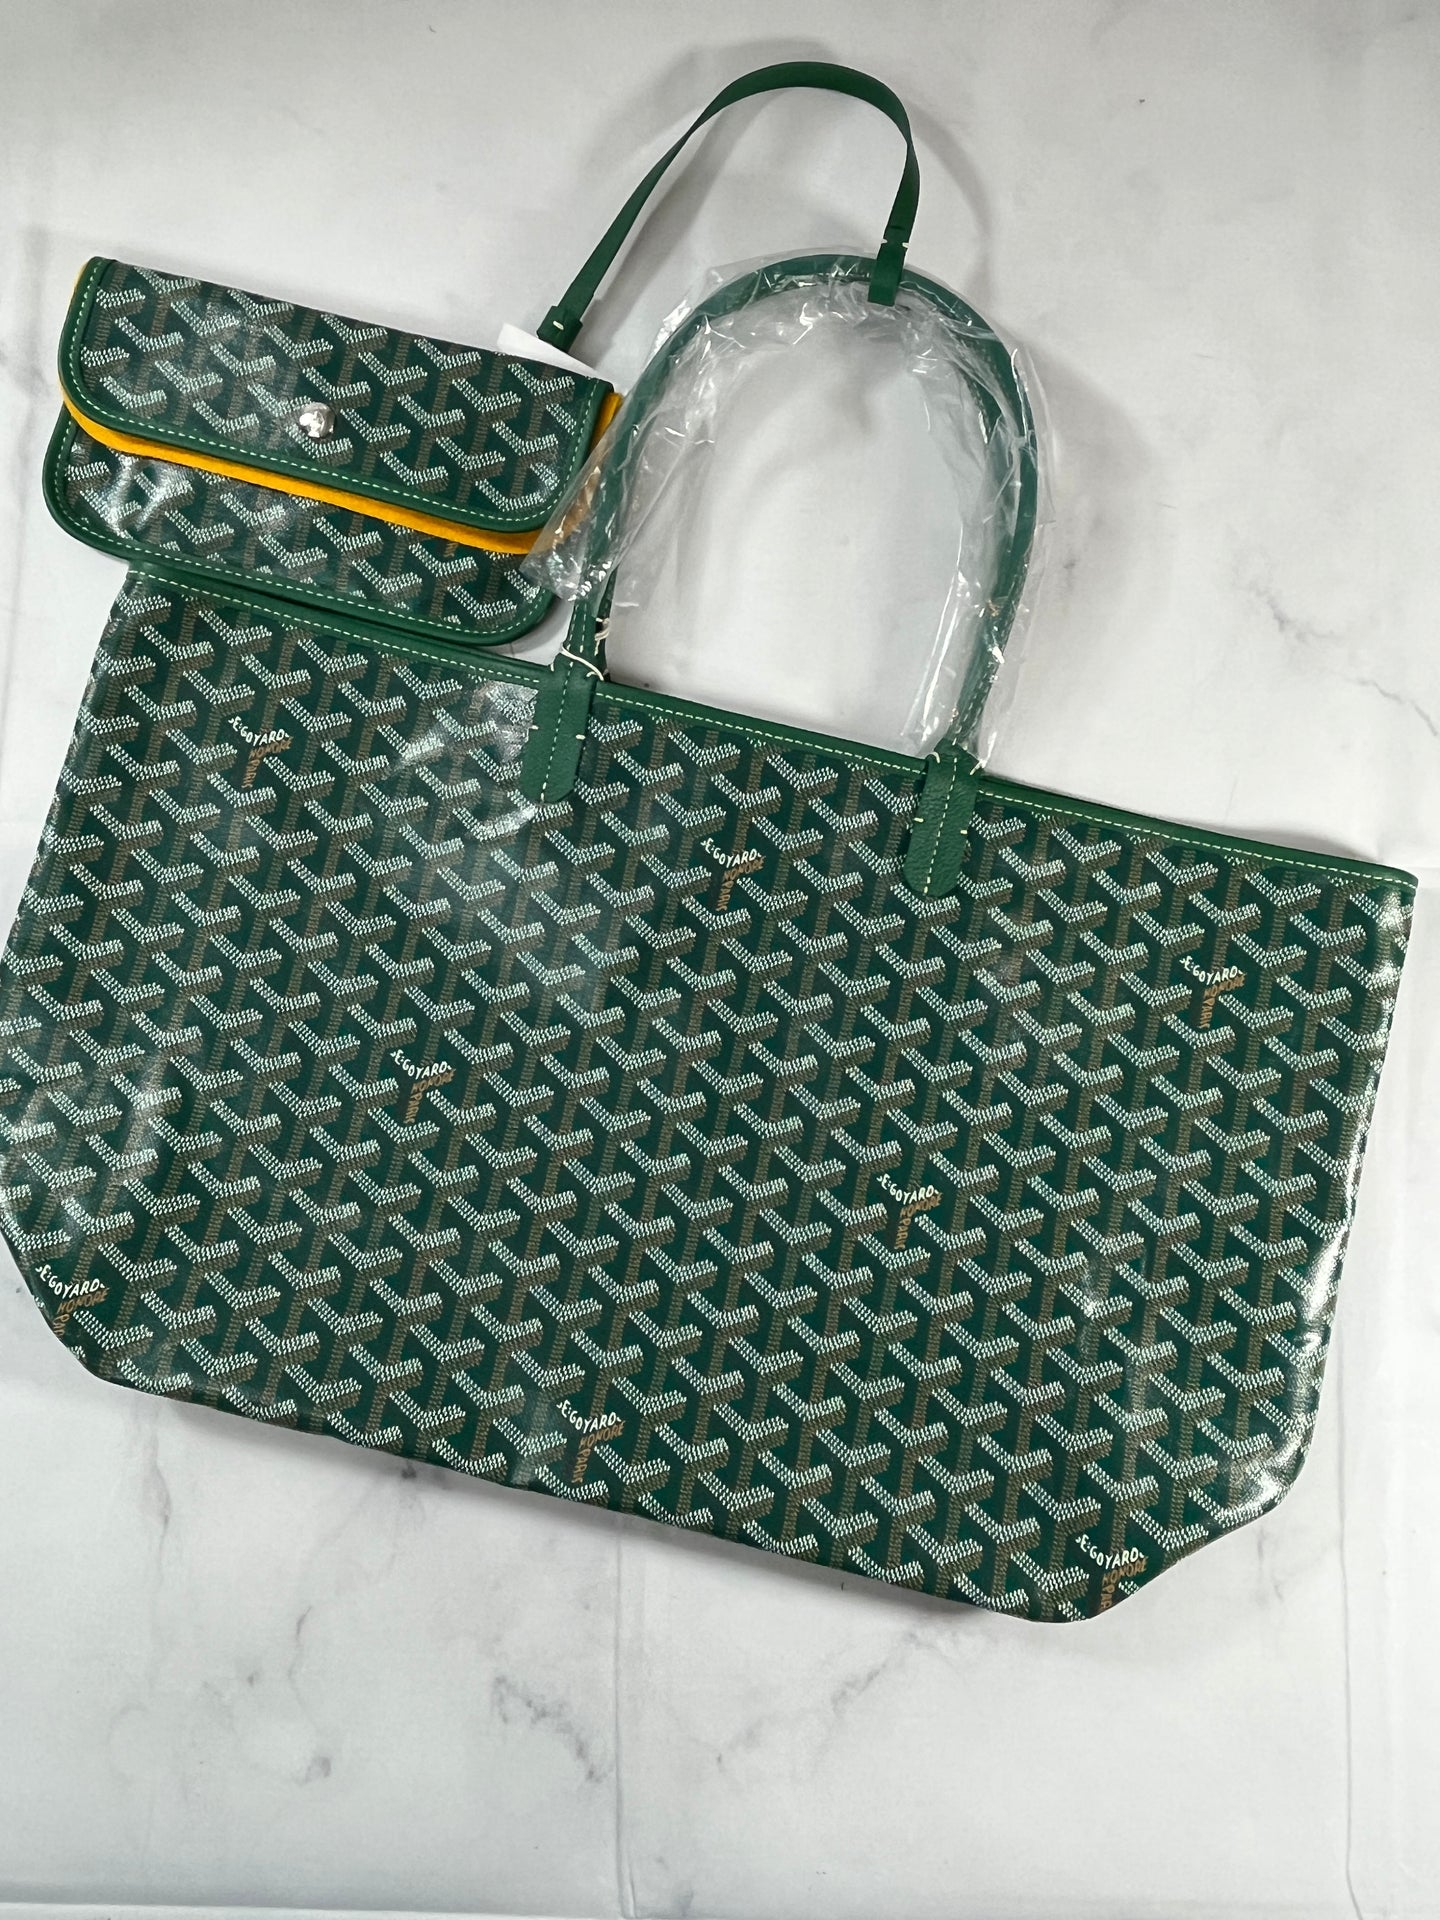 Goyard St Louis PM Green Tote Handbag